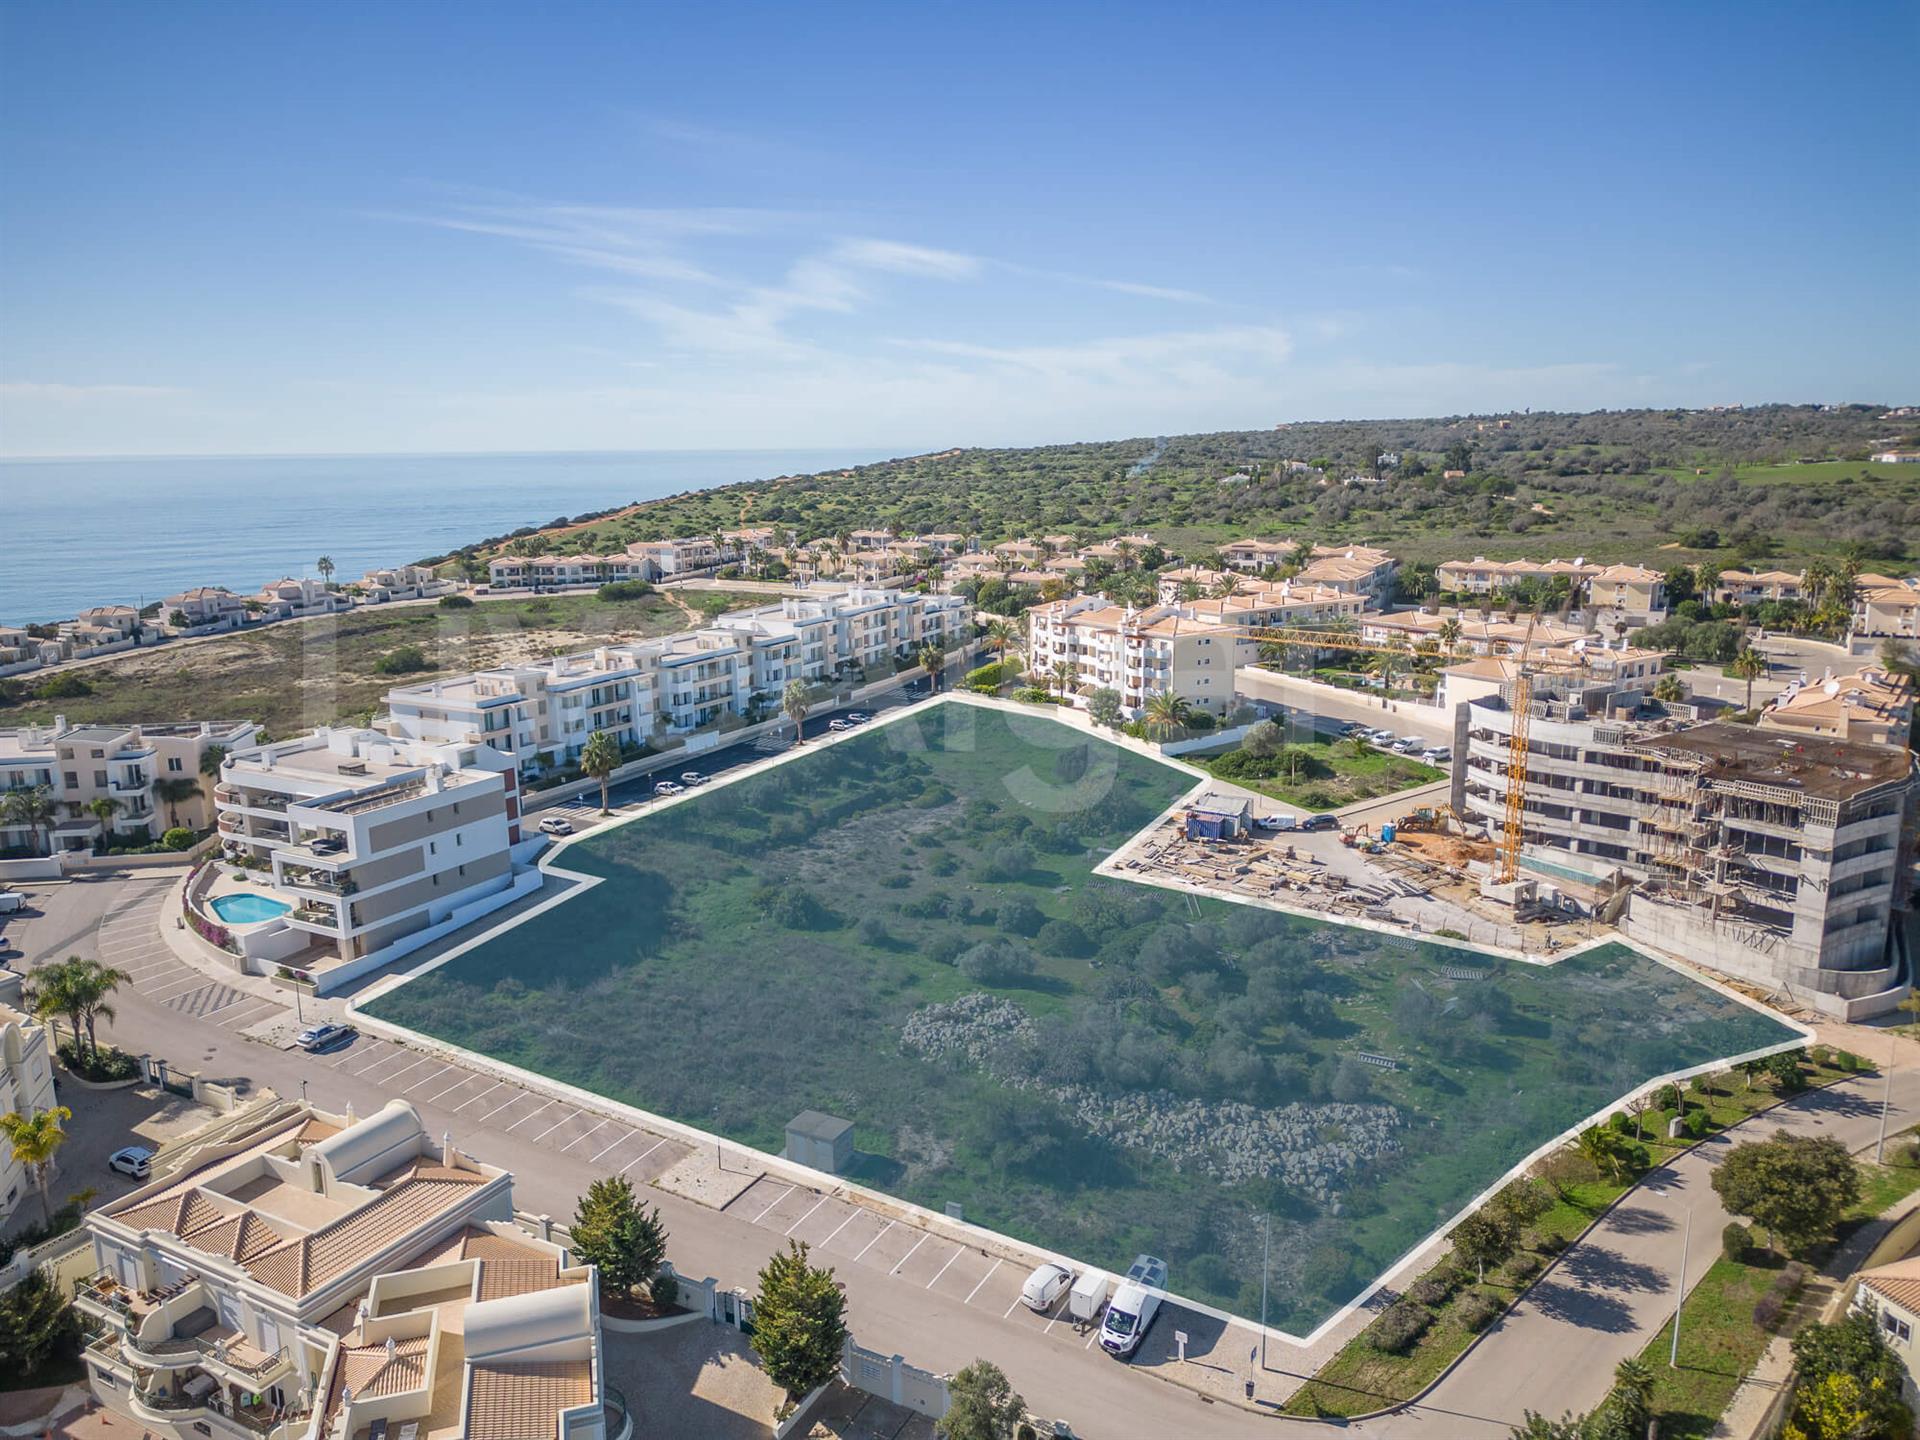 Near Beach | Ein 9.068M² Grosses Baugrundstück In Bester Lage In Porto De Mós Zum Verkauf - Lagos